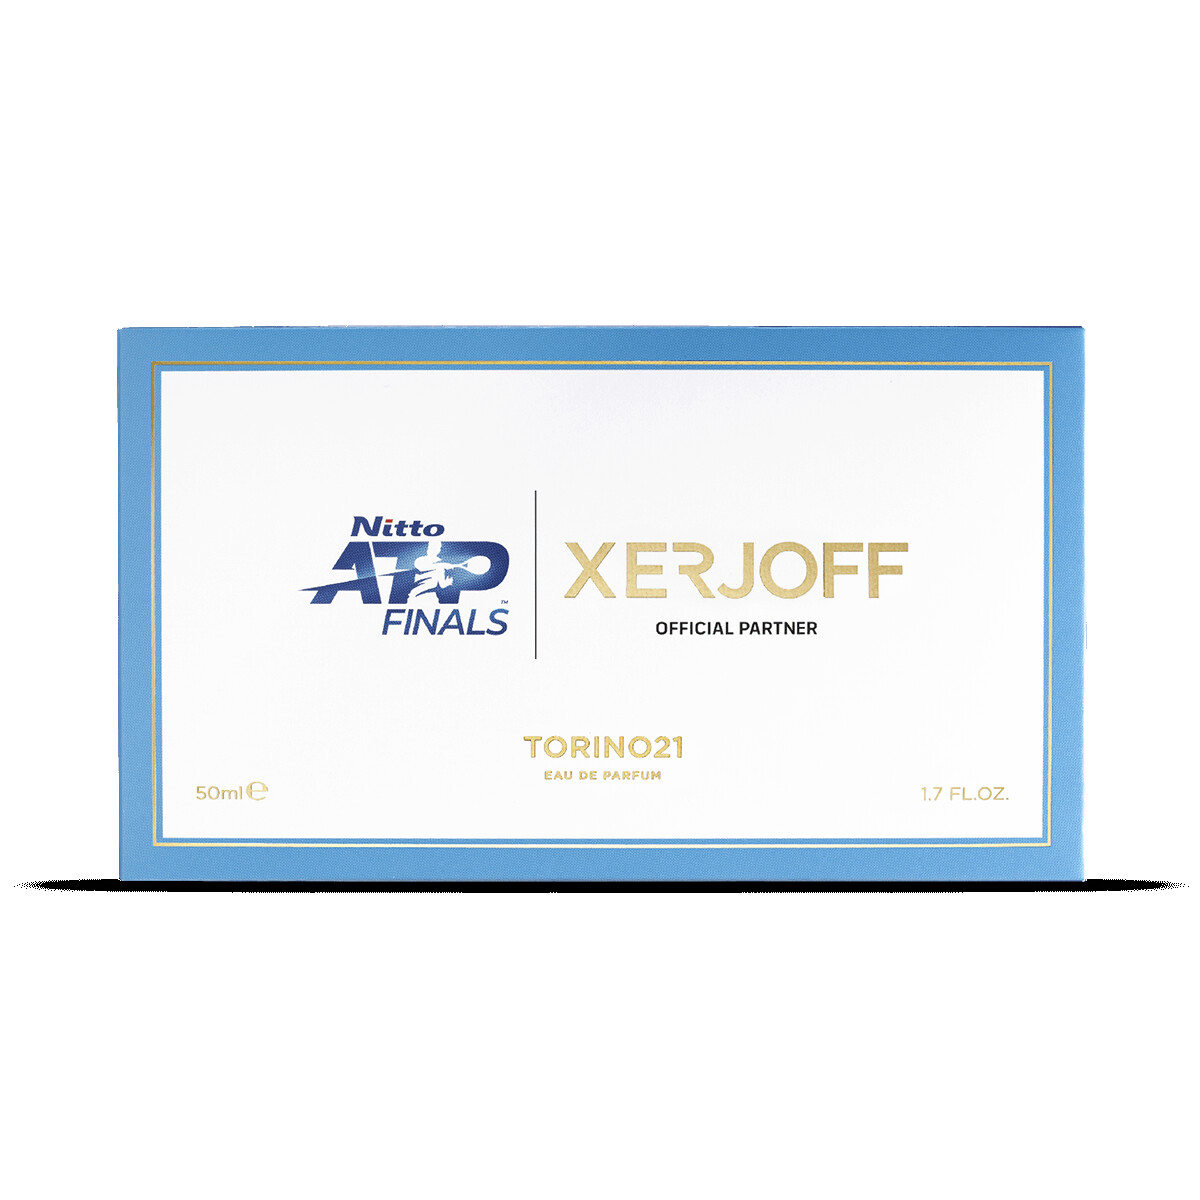 Xerjoff JOIN THE CLUB Torino21 Eau de Parfum 50ml